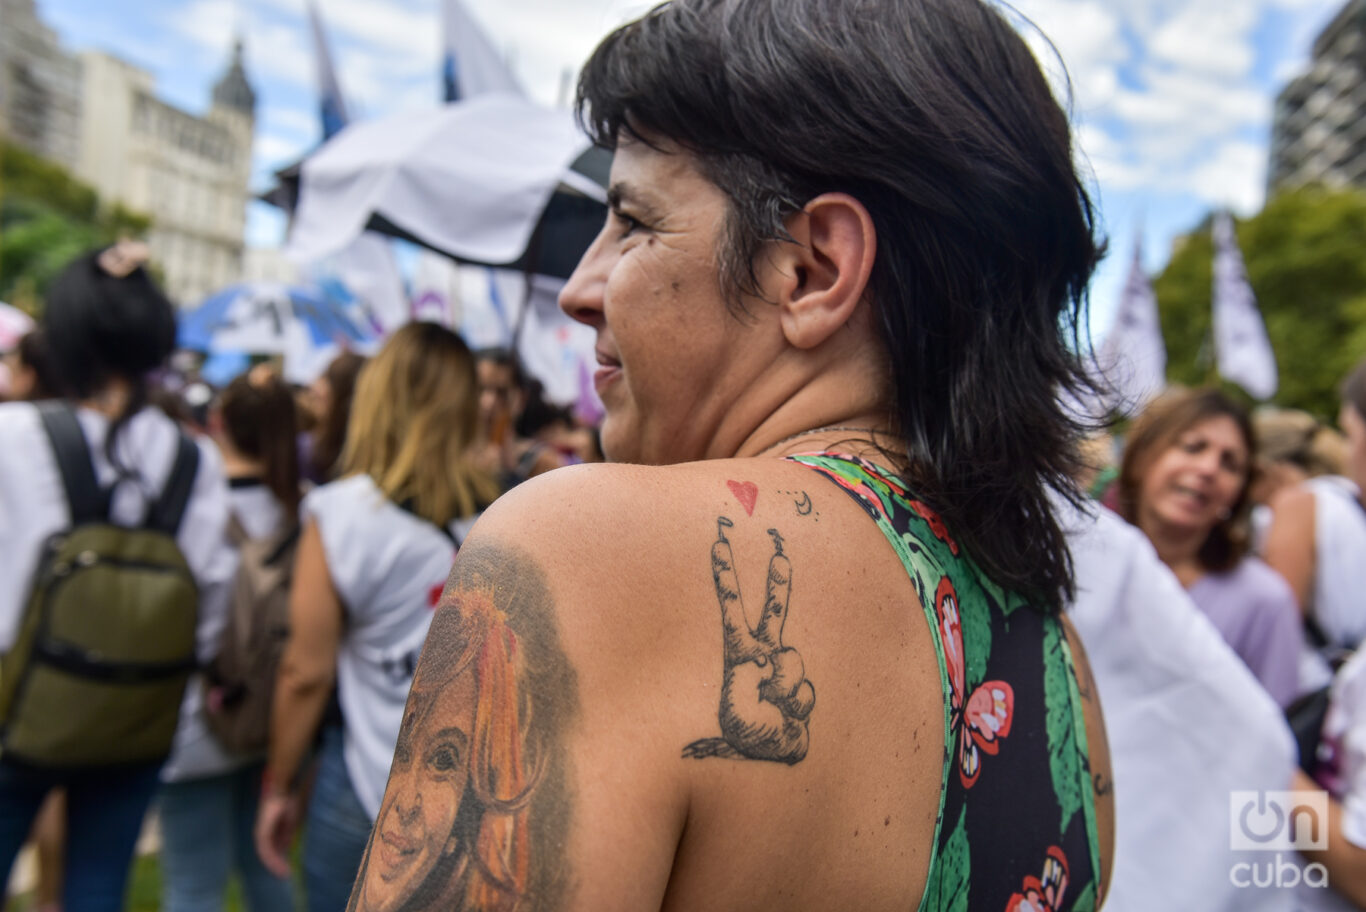 El sol y el calor no detuvieron a las decenas de miles de mujeres que participaron en la marcha en Buenos Aires. Foto: Kaloian.